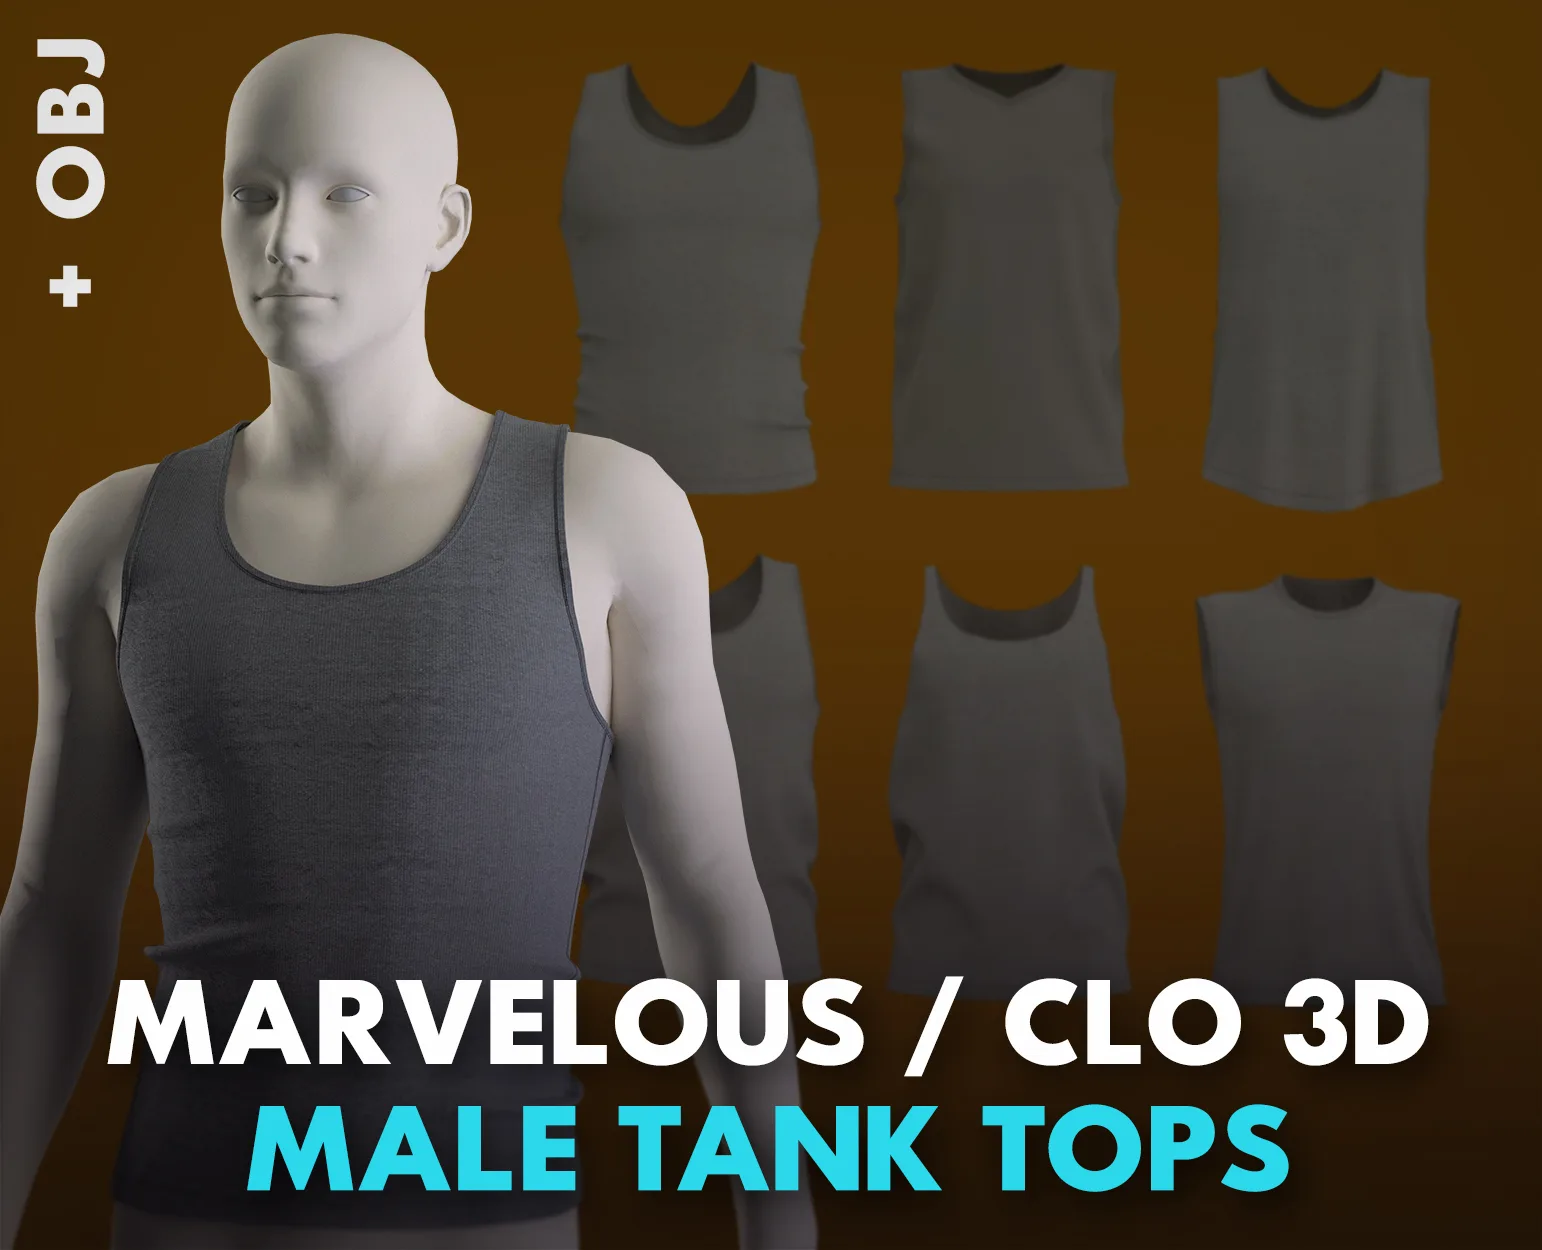 Male Tank Tops. Marvelous / Clo 3D (genesis 8, zprj + obj)